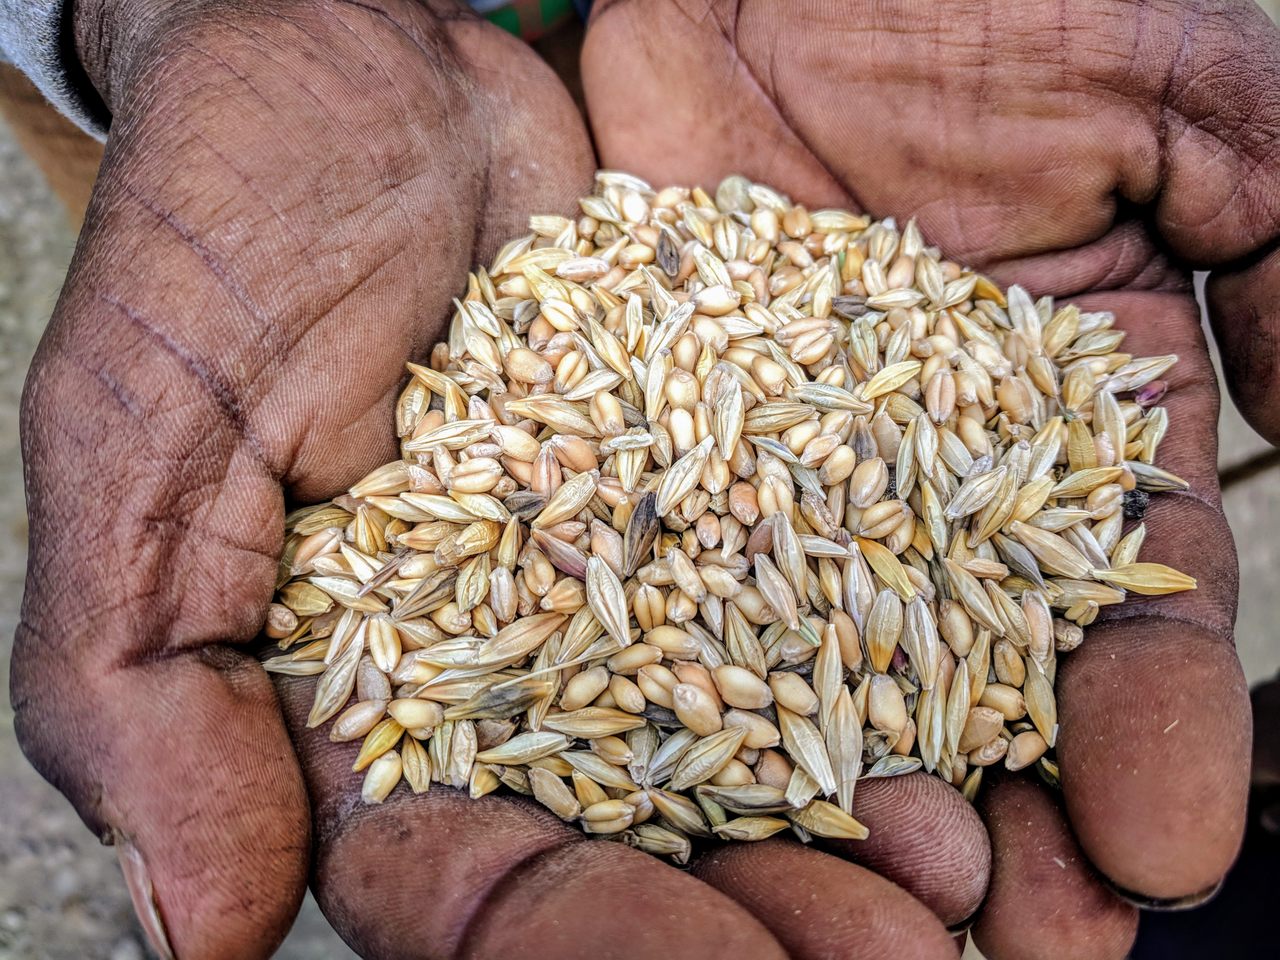 埃塞俄比亚的一位农民捧着一把麦斯林，这是一种混合谷物，包括不同品种的小麦和大麦，它们一起生长。